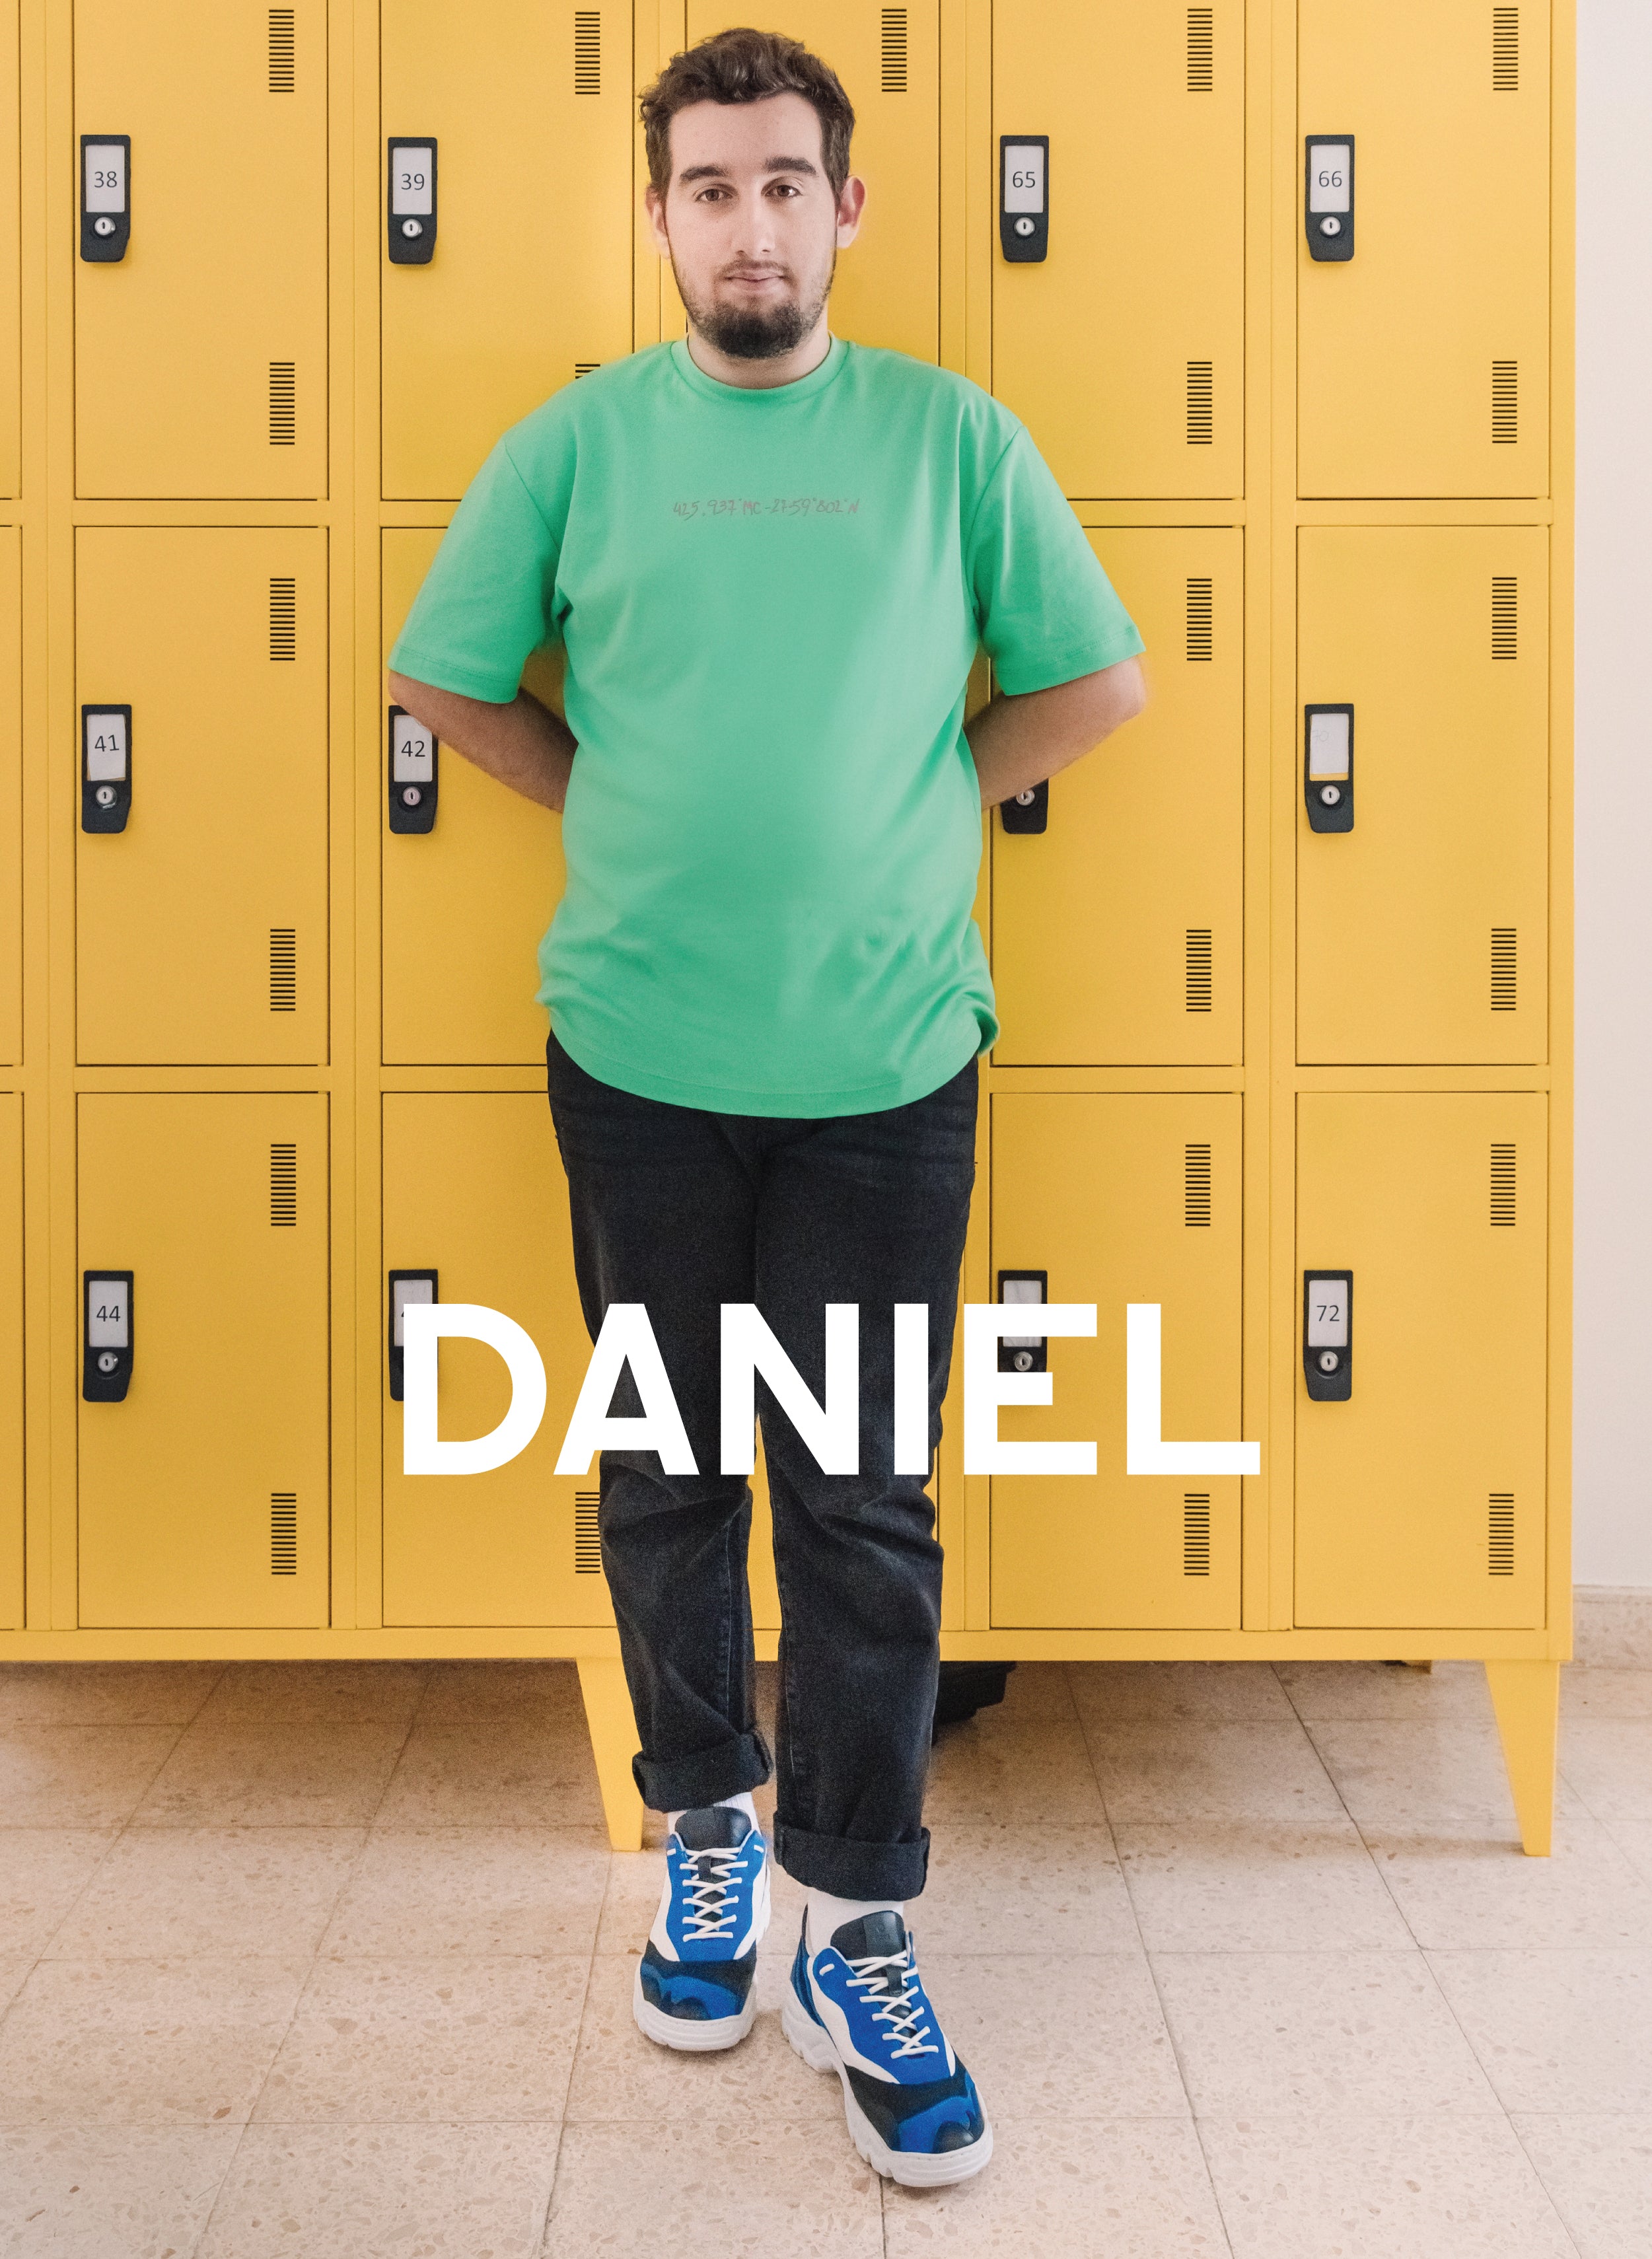 Daniel apoyado en un casillero amarillo, con Diverge sneakers, promoviendo el impacto social y el calzado personalizado a través del proyecto Imagine. 